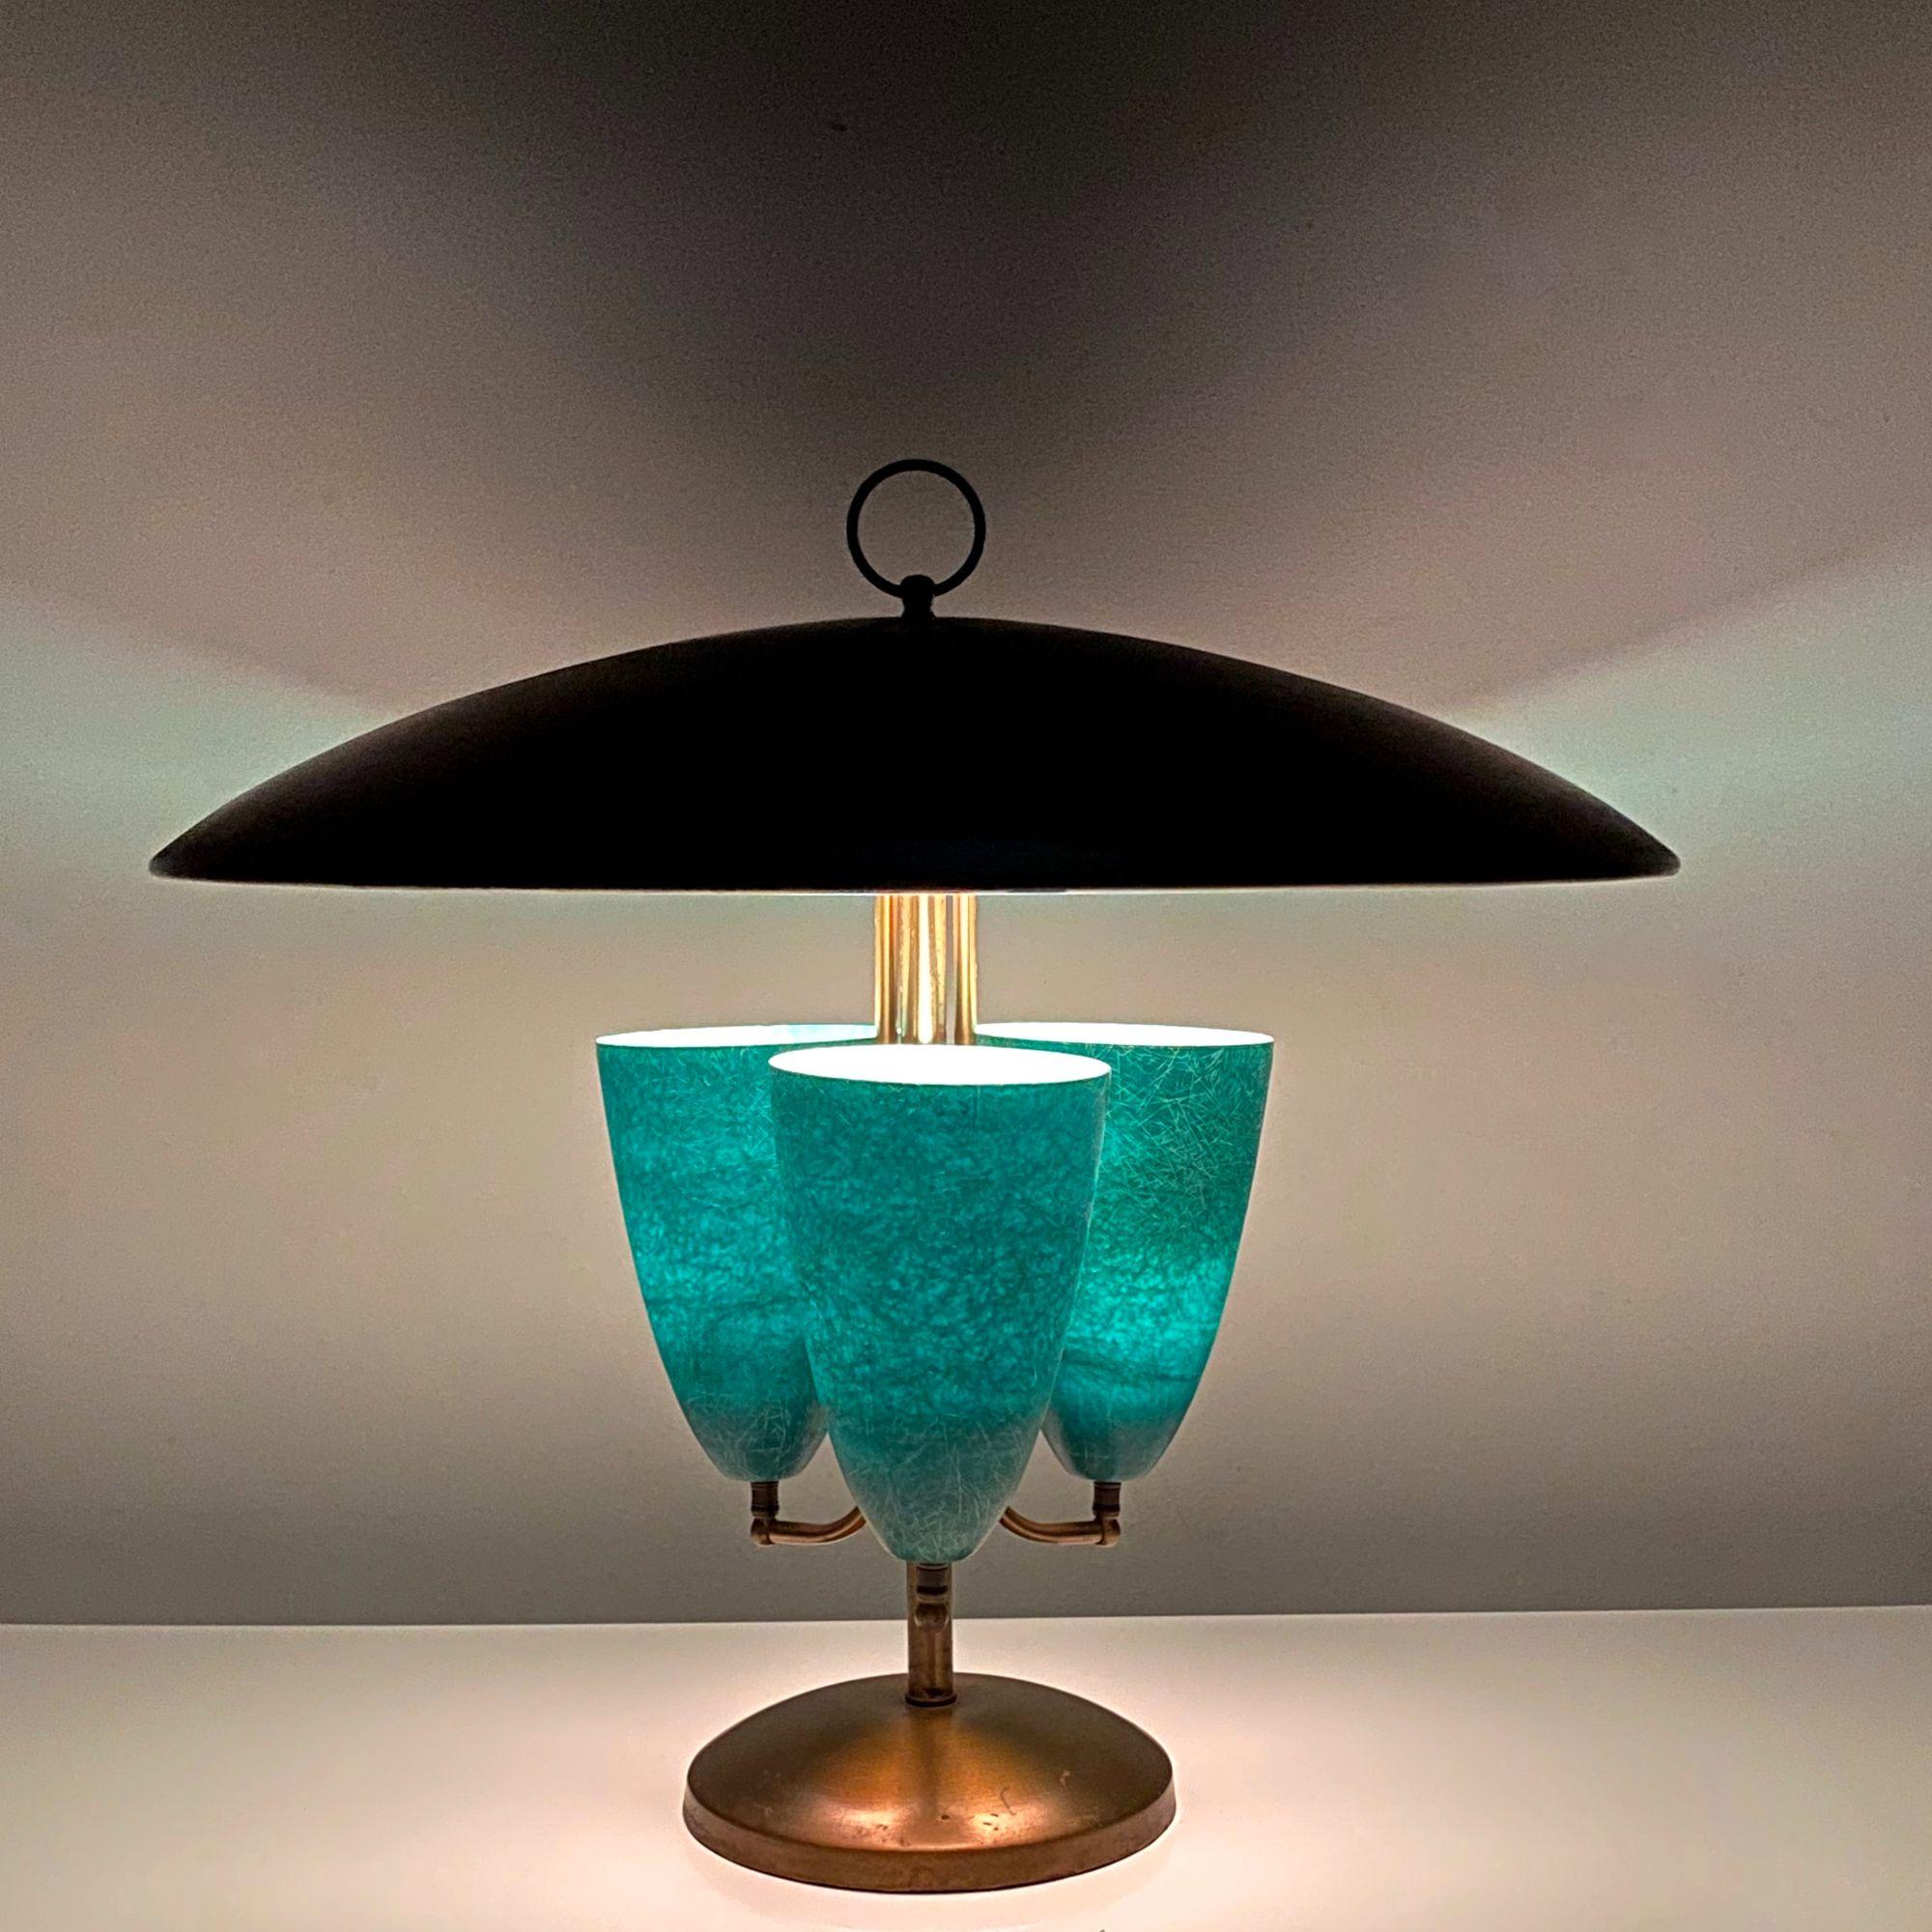 Grande lampe de table moderniste à cône en fibre de verre et à baldaquin en laiton

Remarquable lampe de table de Light House Lamp & Shade Co. de Californie vers 1950.
Un abat-jour en laiton avec un fleuron en forme d'anneau surmonte un trio de